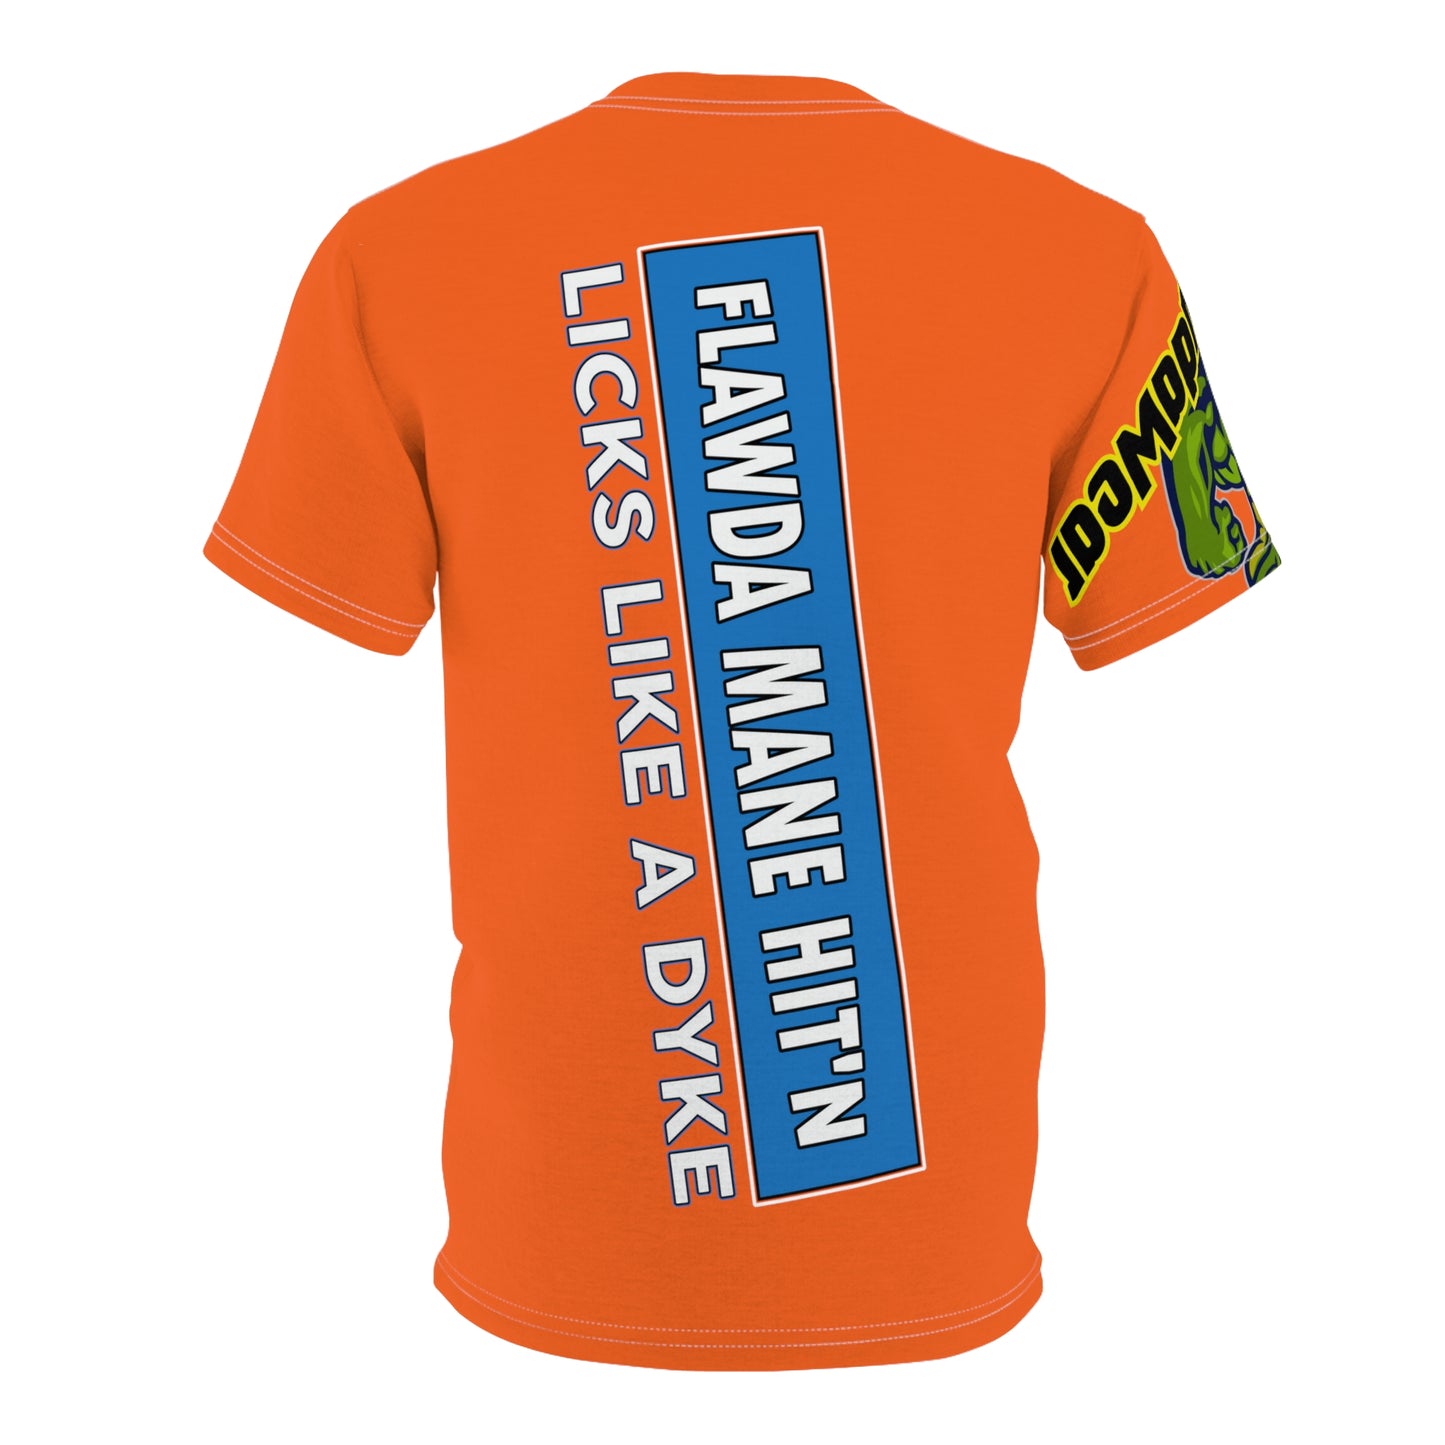 Orange Flawdawear Limited Edition OG Flawda Mane “Flawda Mane Hit’n Licks Like A Dyke” Unisex Cut & Sew Playuz Tee